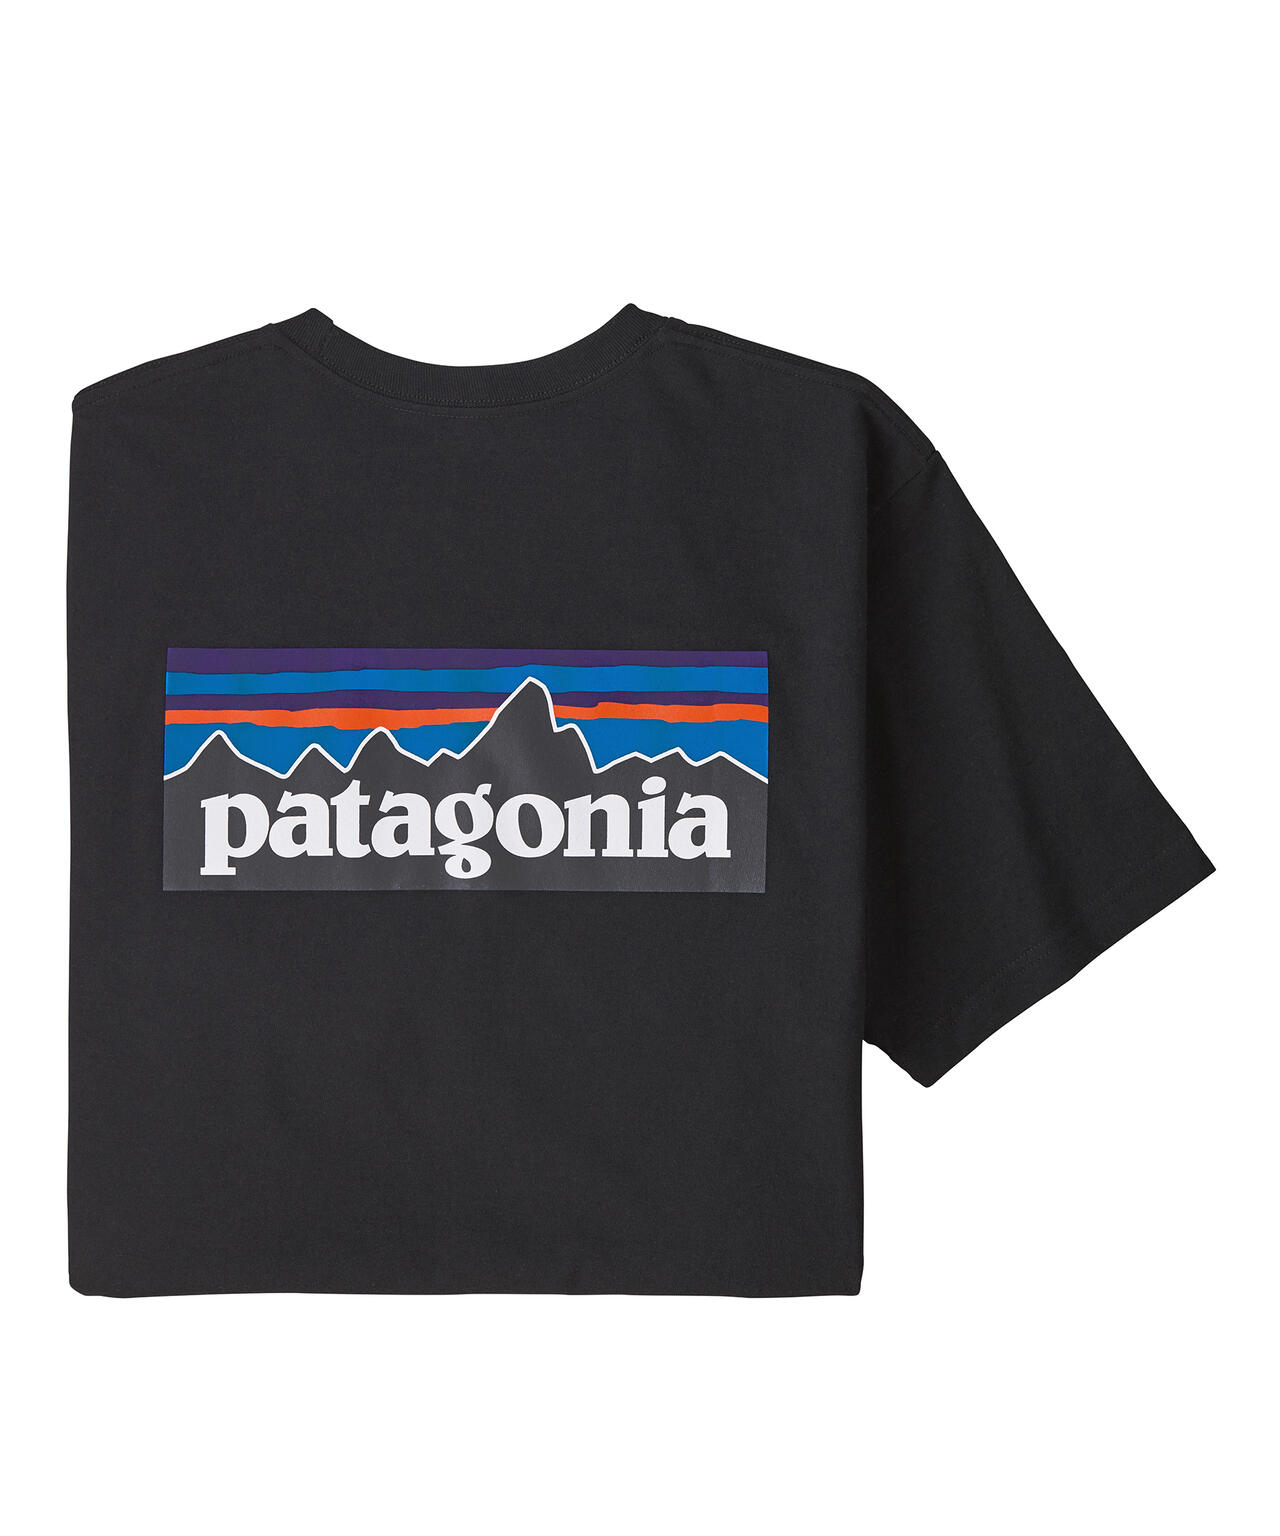 パタゴニア Tシャツ レスポンシビリティー ブルー XS  ロゴ P6